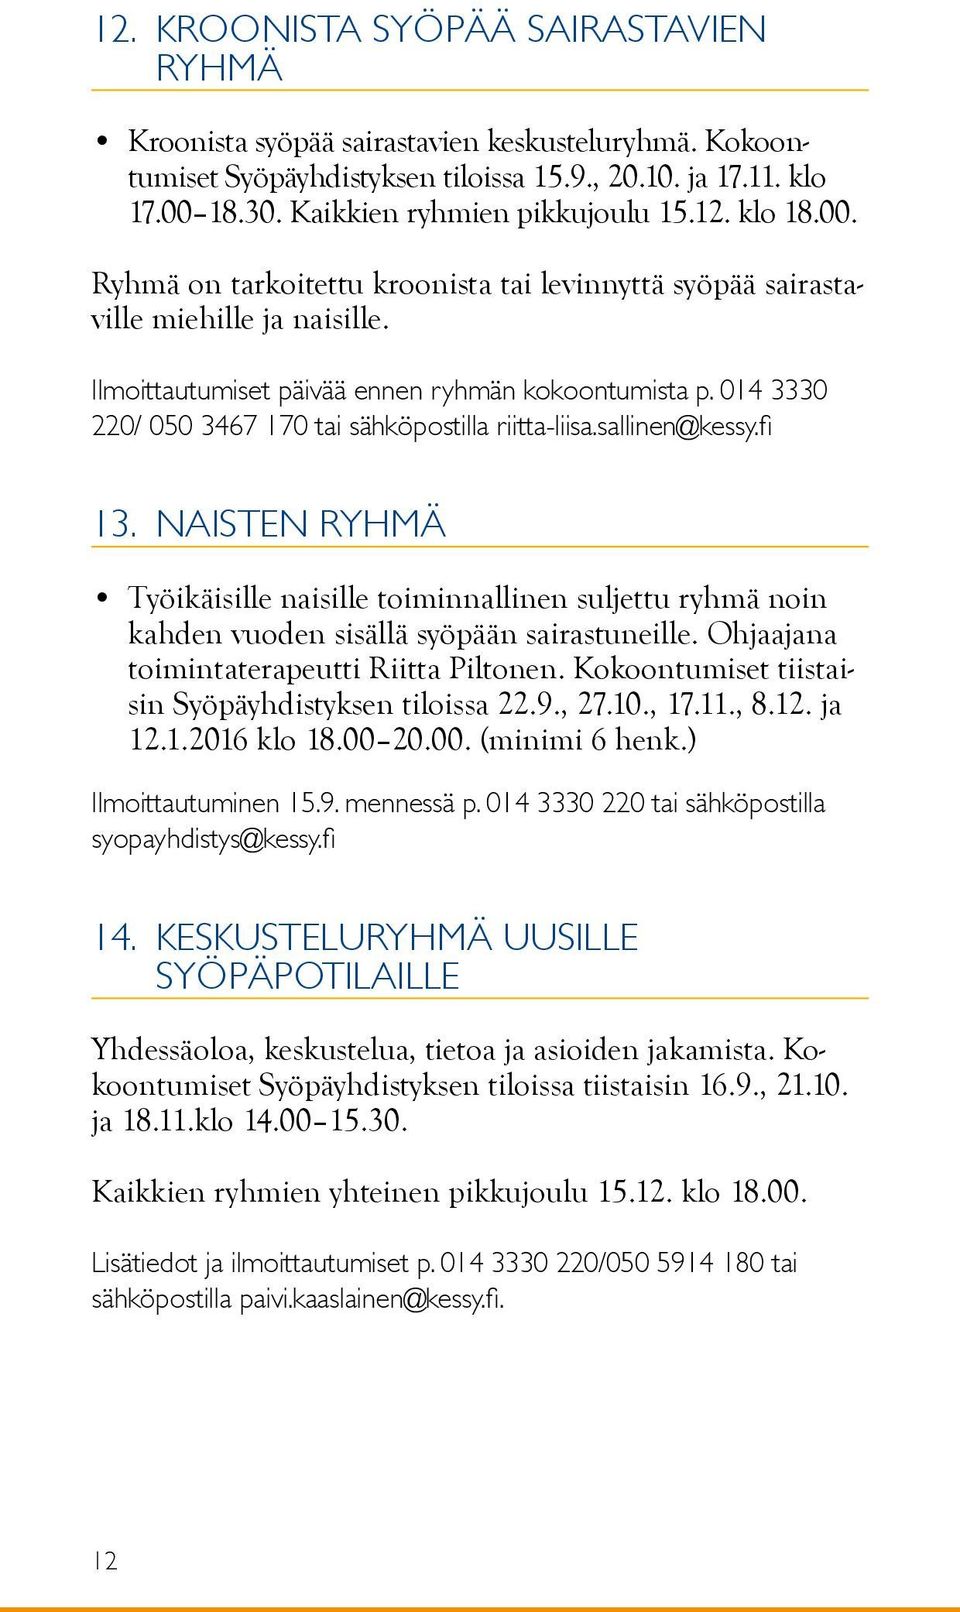 014 3330 220/ 050 3467 170 tai sähköpostilla riitta-liisa.sallinen@kessy.fi 13. Naisten ryhmä Työikäisille naisille toiminnallinen suljettu ryhmä noin kahden vuoden sisällä syöpään sairastuneille.